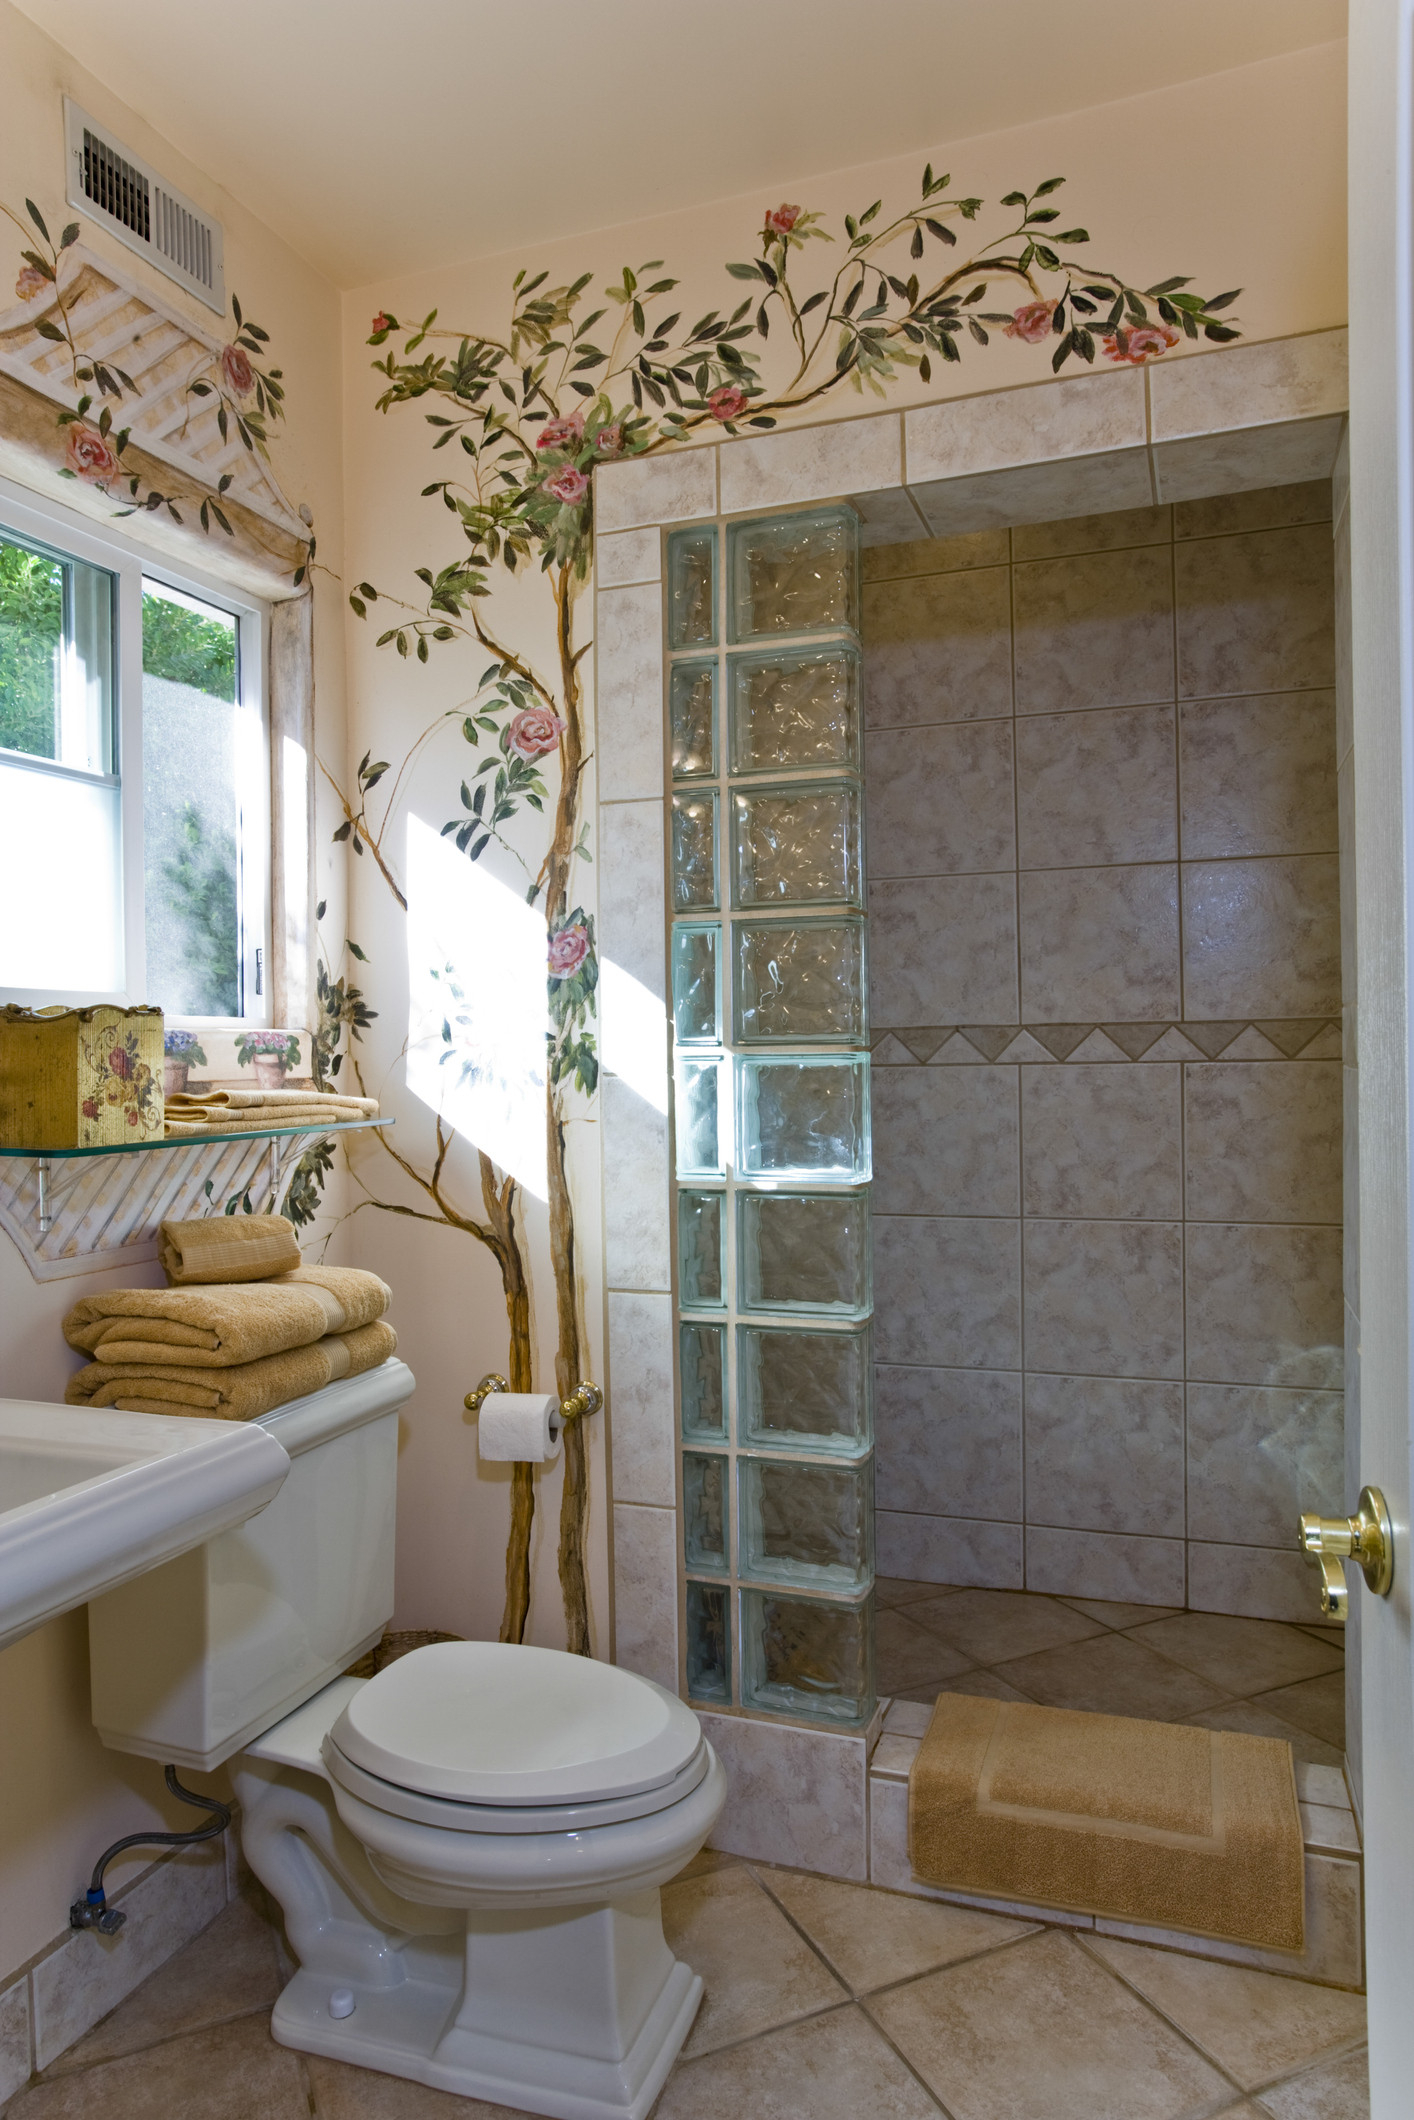 Tapete Im Badezimmer: Gestaltungsmöglichkeiten | Obi inside Tapete Im Badezimmer